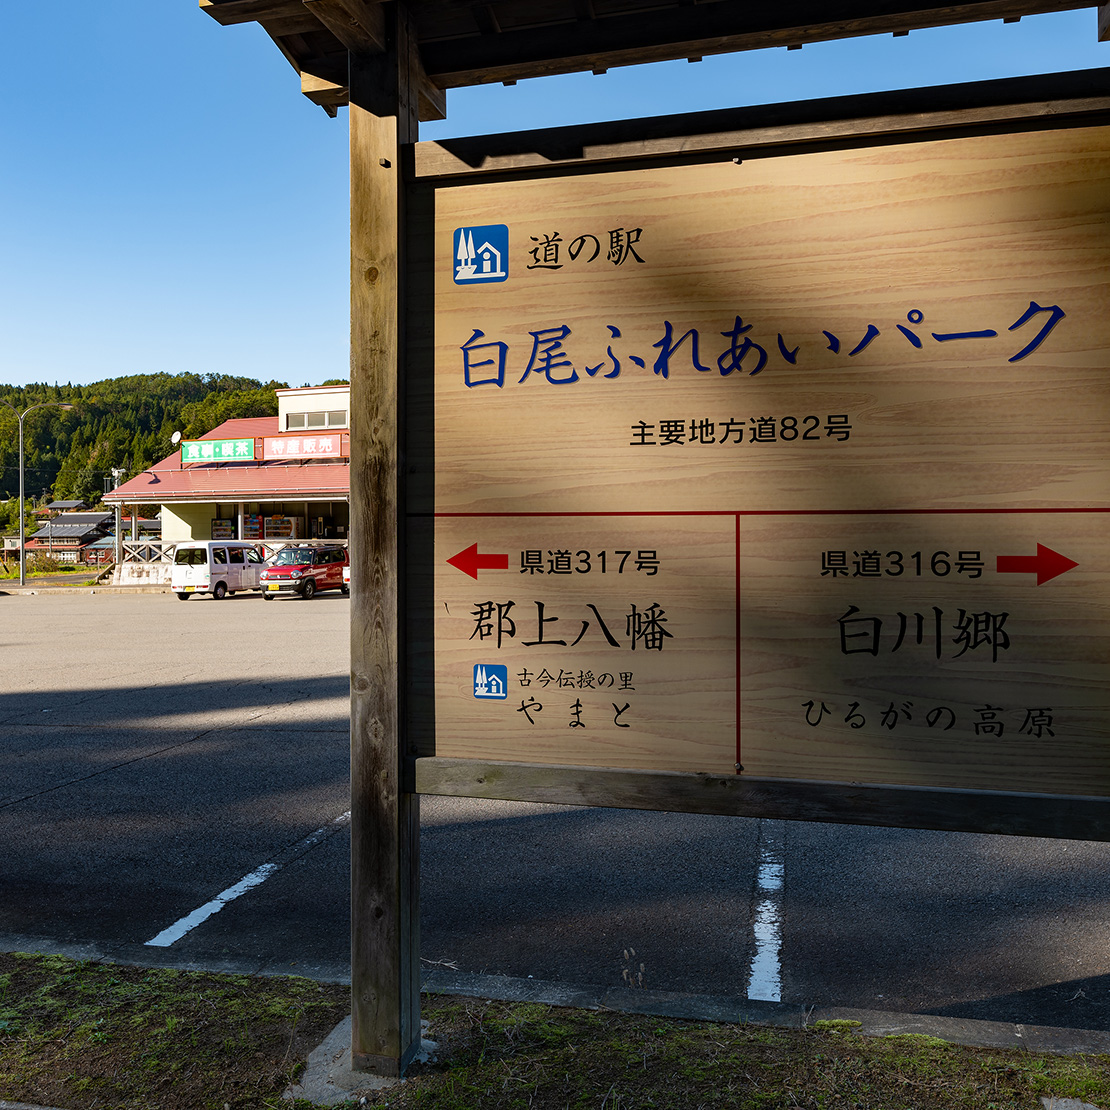 Shirotori Roadside Station Shirao Fureai Park